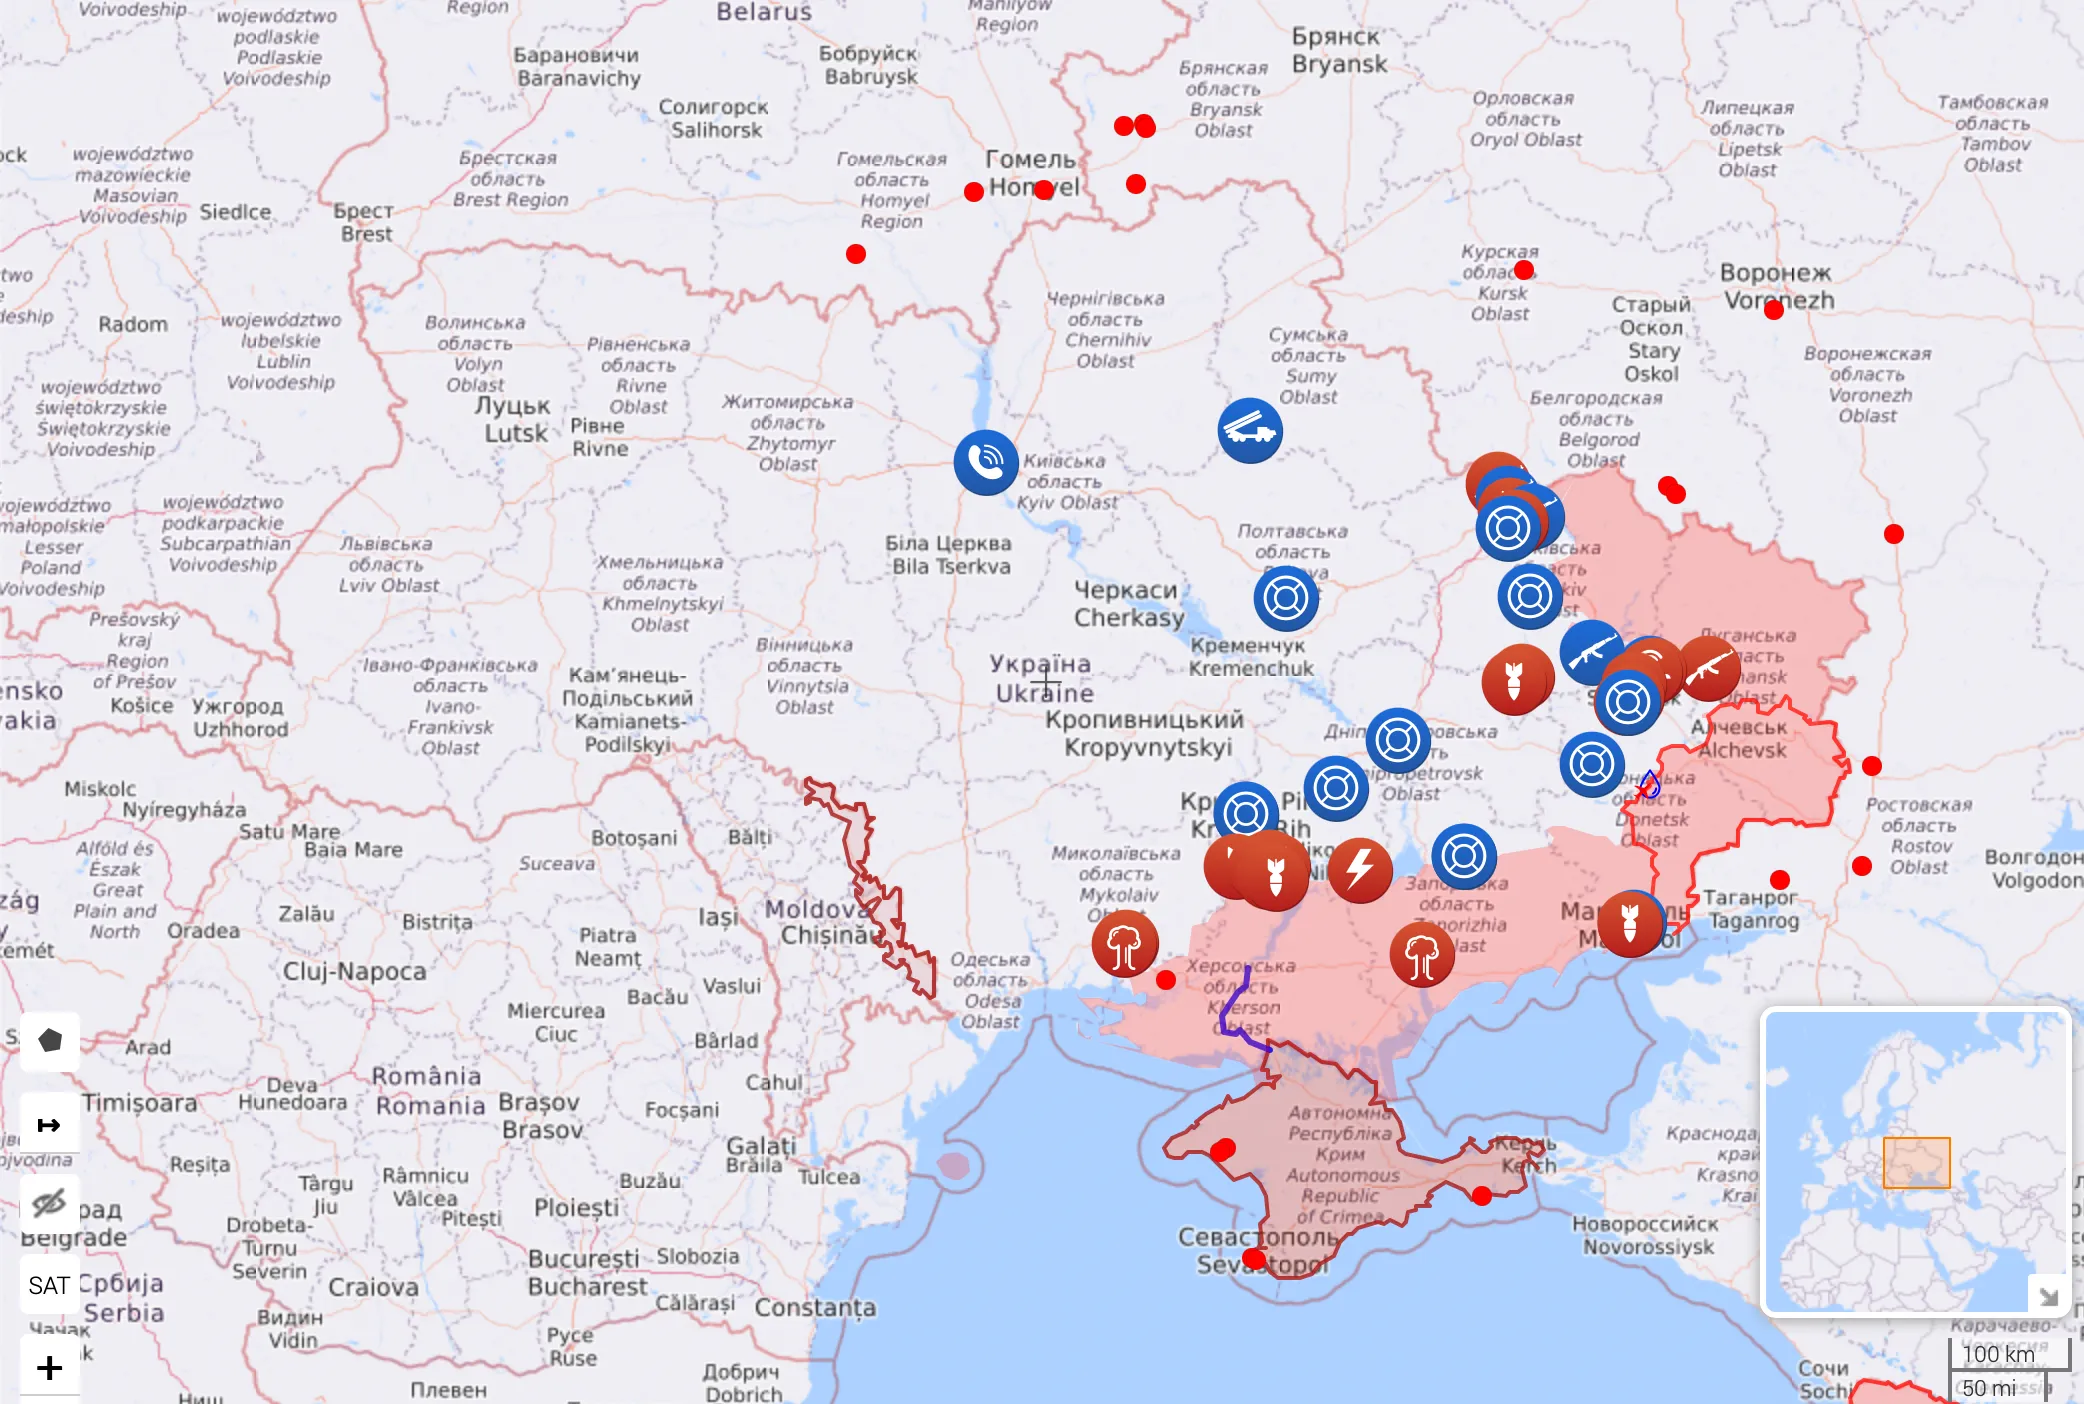 Актуальная карта боевых действий в Украине